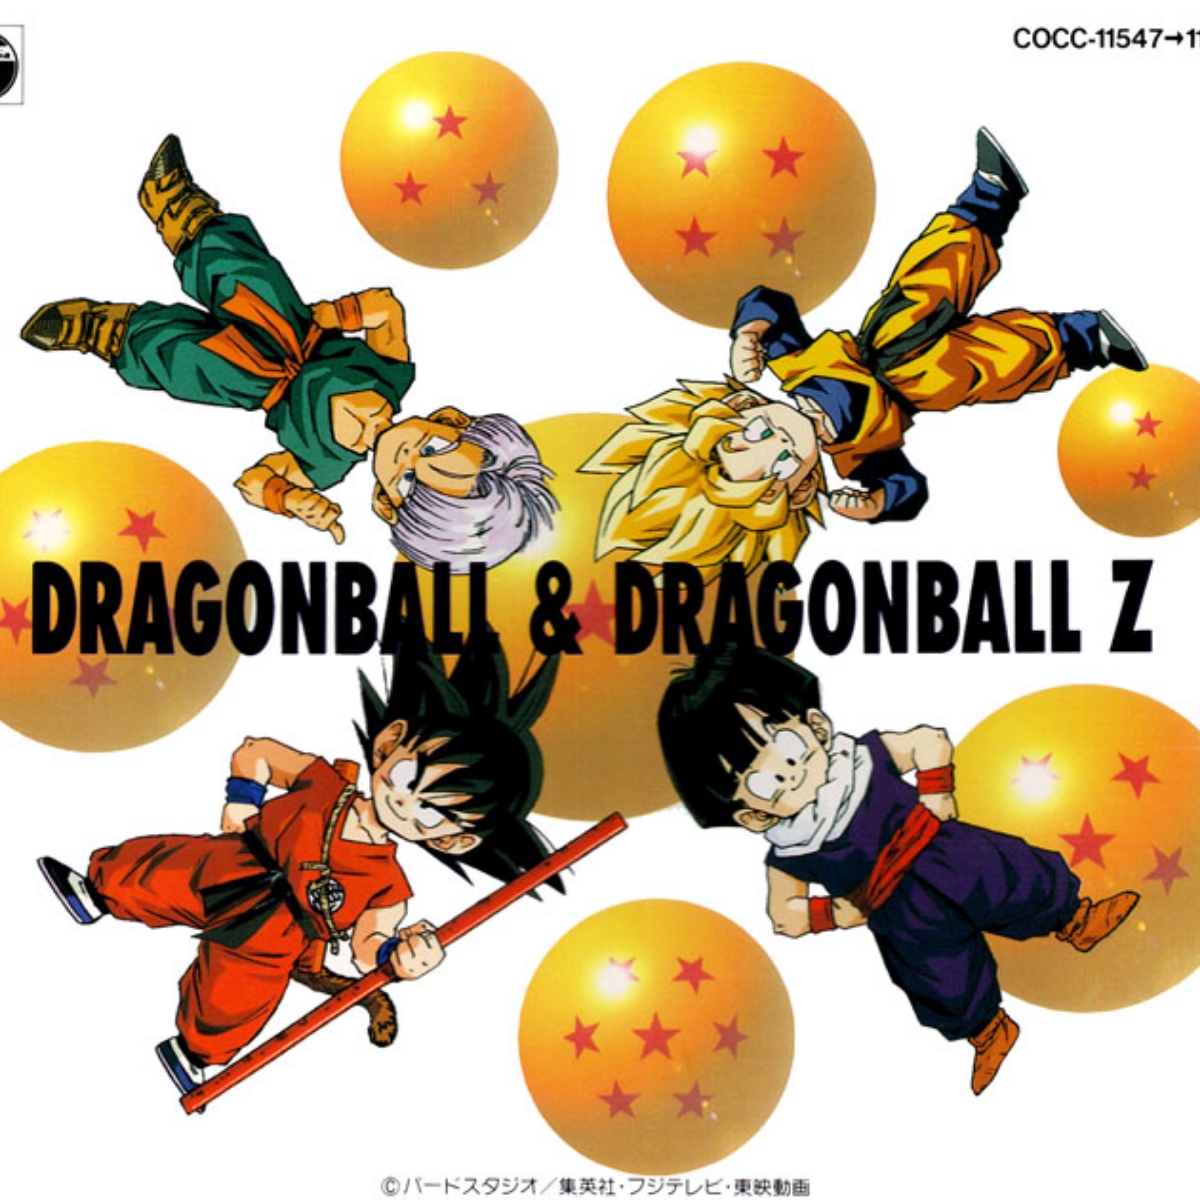 Dragon Ball & Dragon Ball Z Great Complete Collection - Osanime